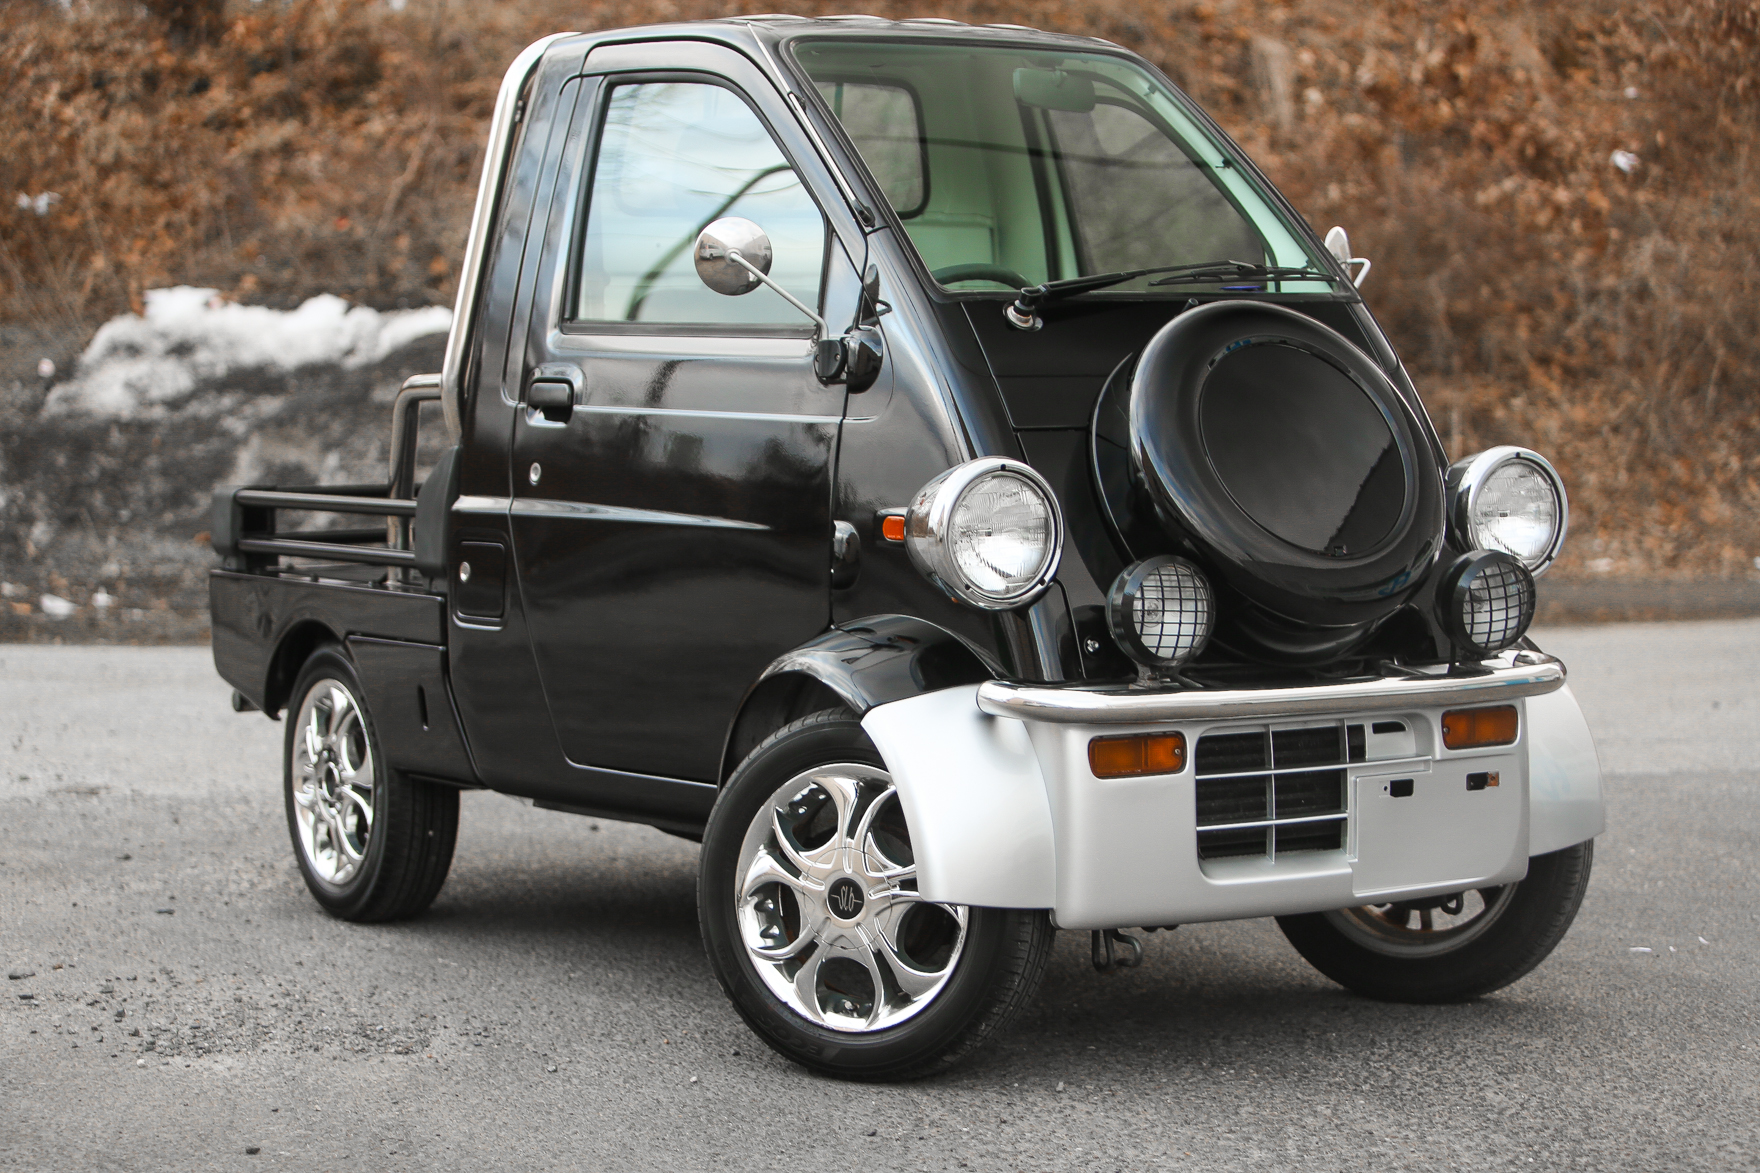 1996 Daihatsu Midget - $8,950